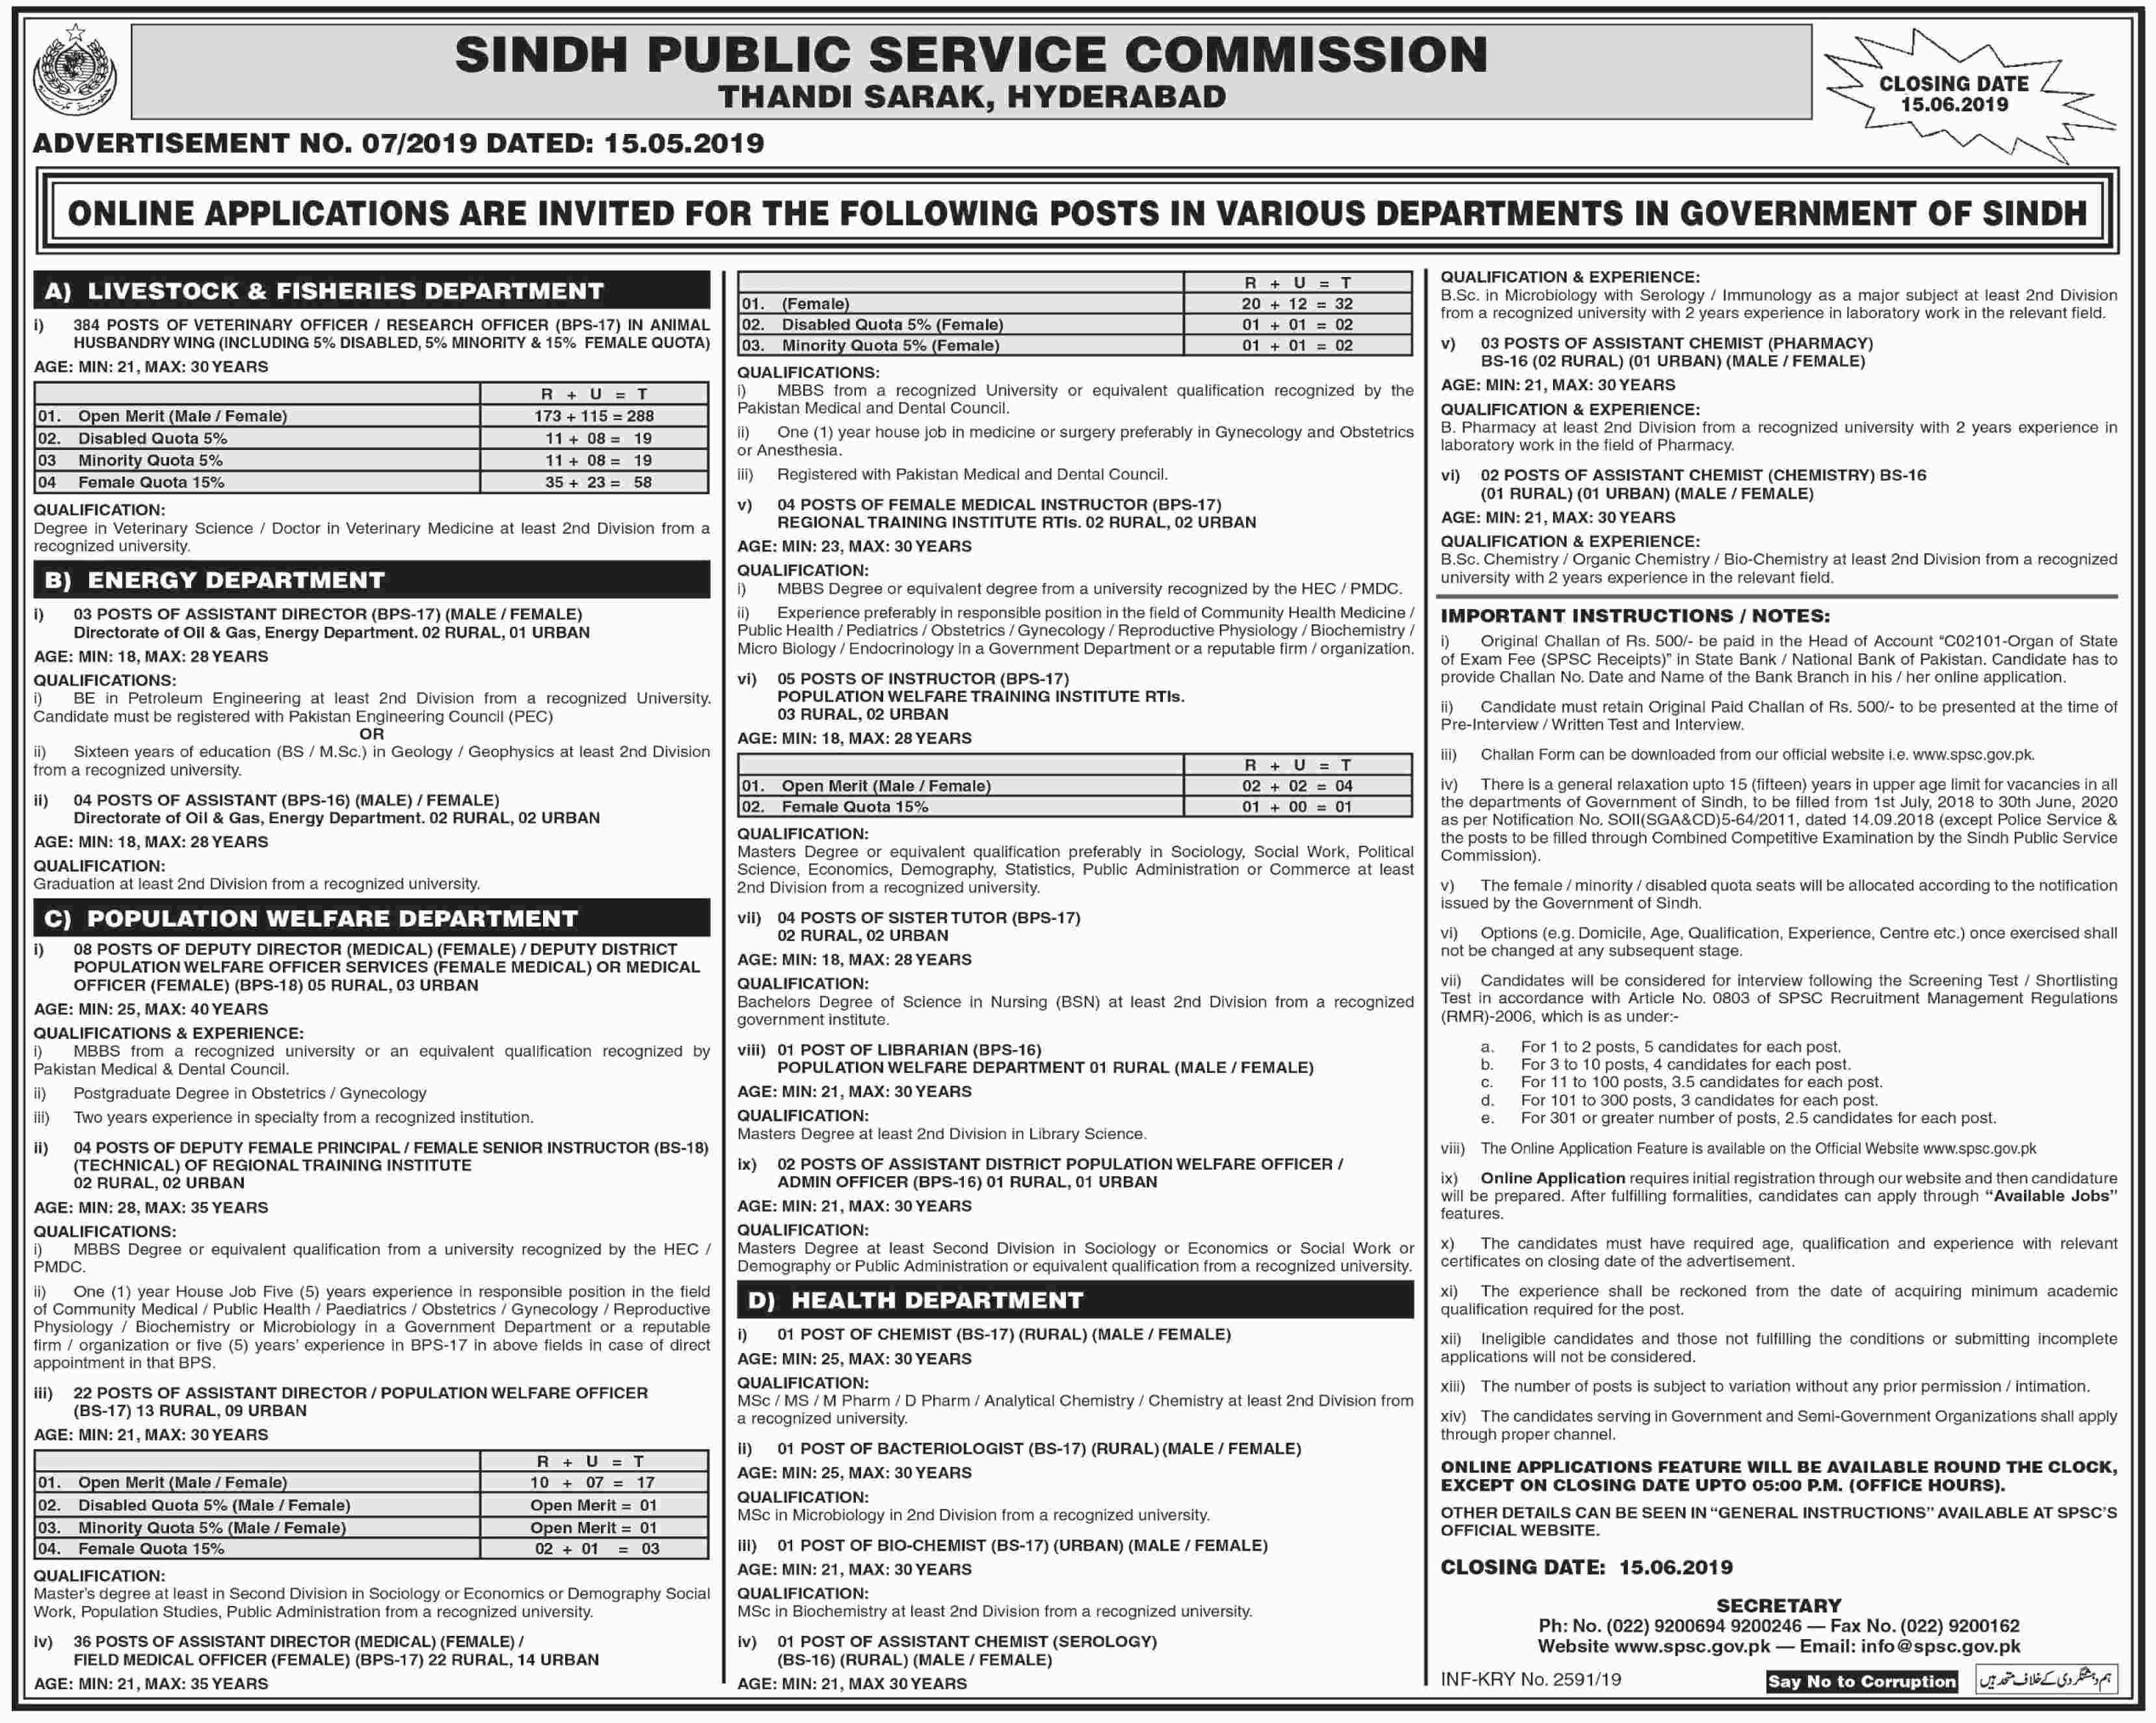 Sindh Public Service Commission (SPSC) jobs 2019